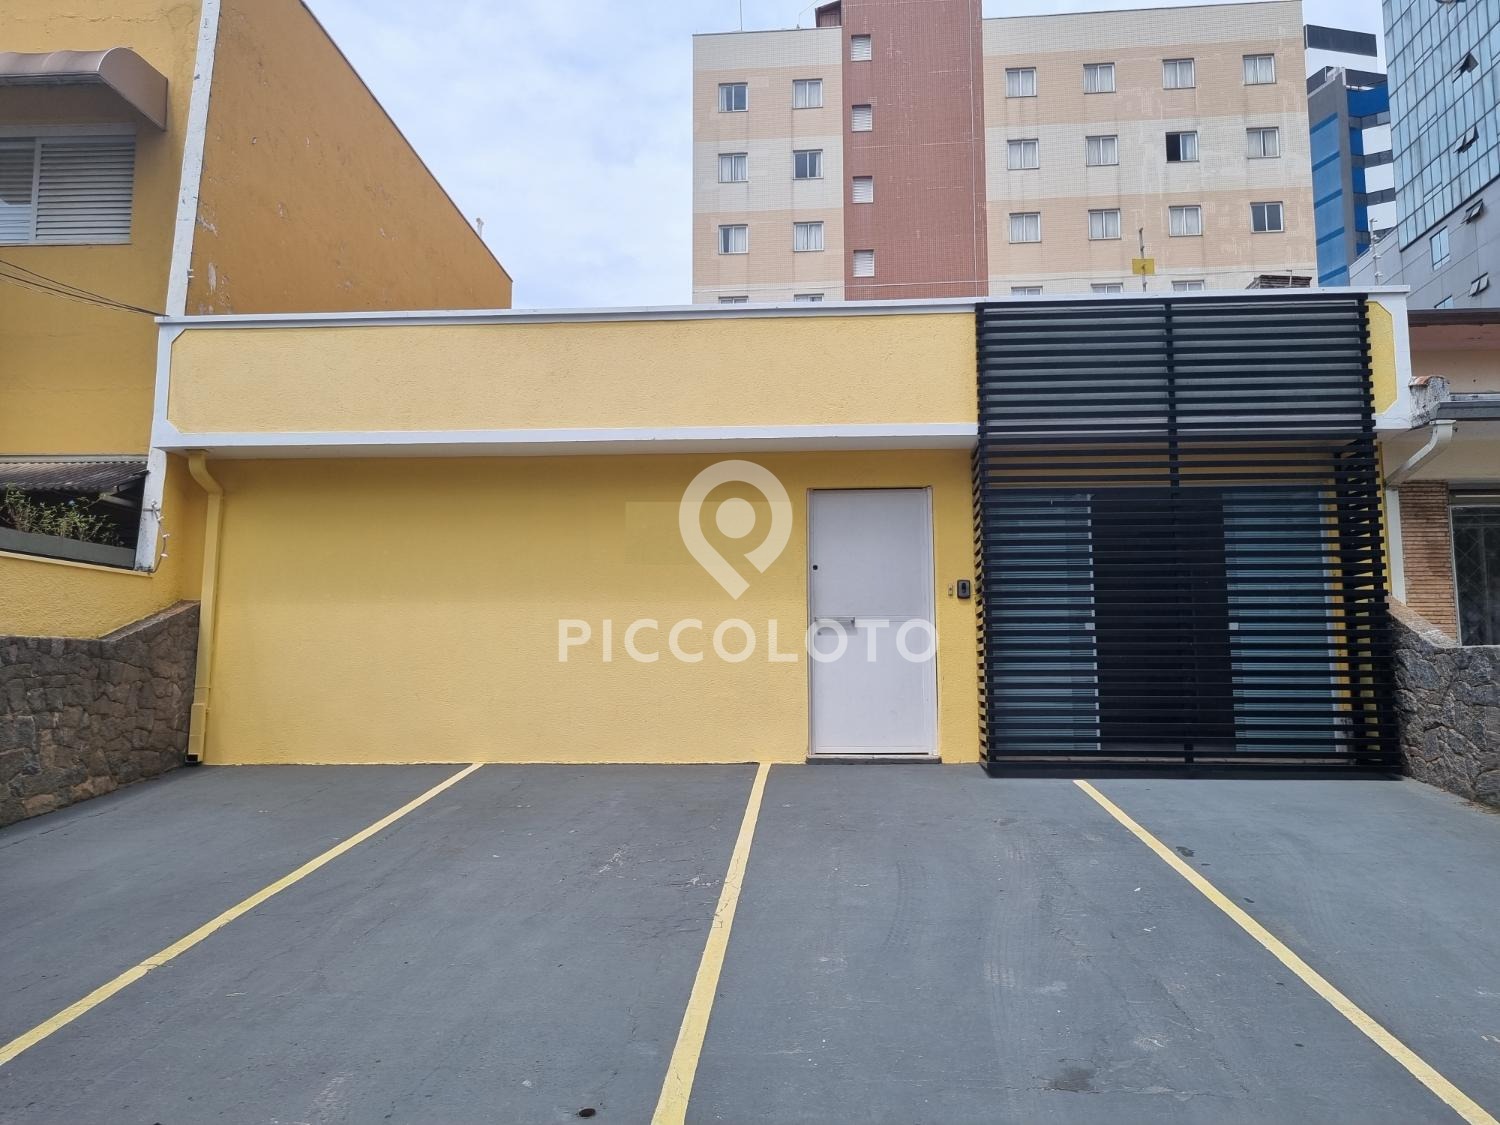 Piccoloto - Casa para alugar no Botafogo em Campinas